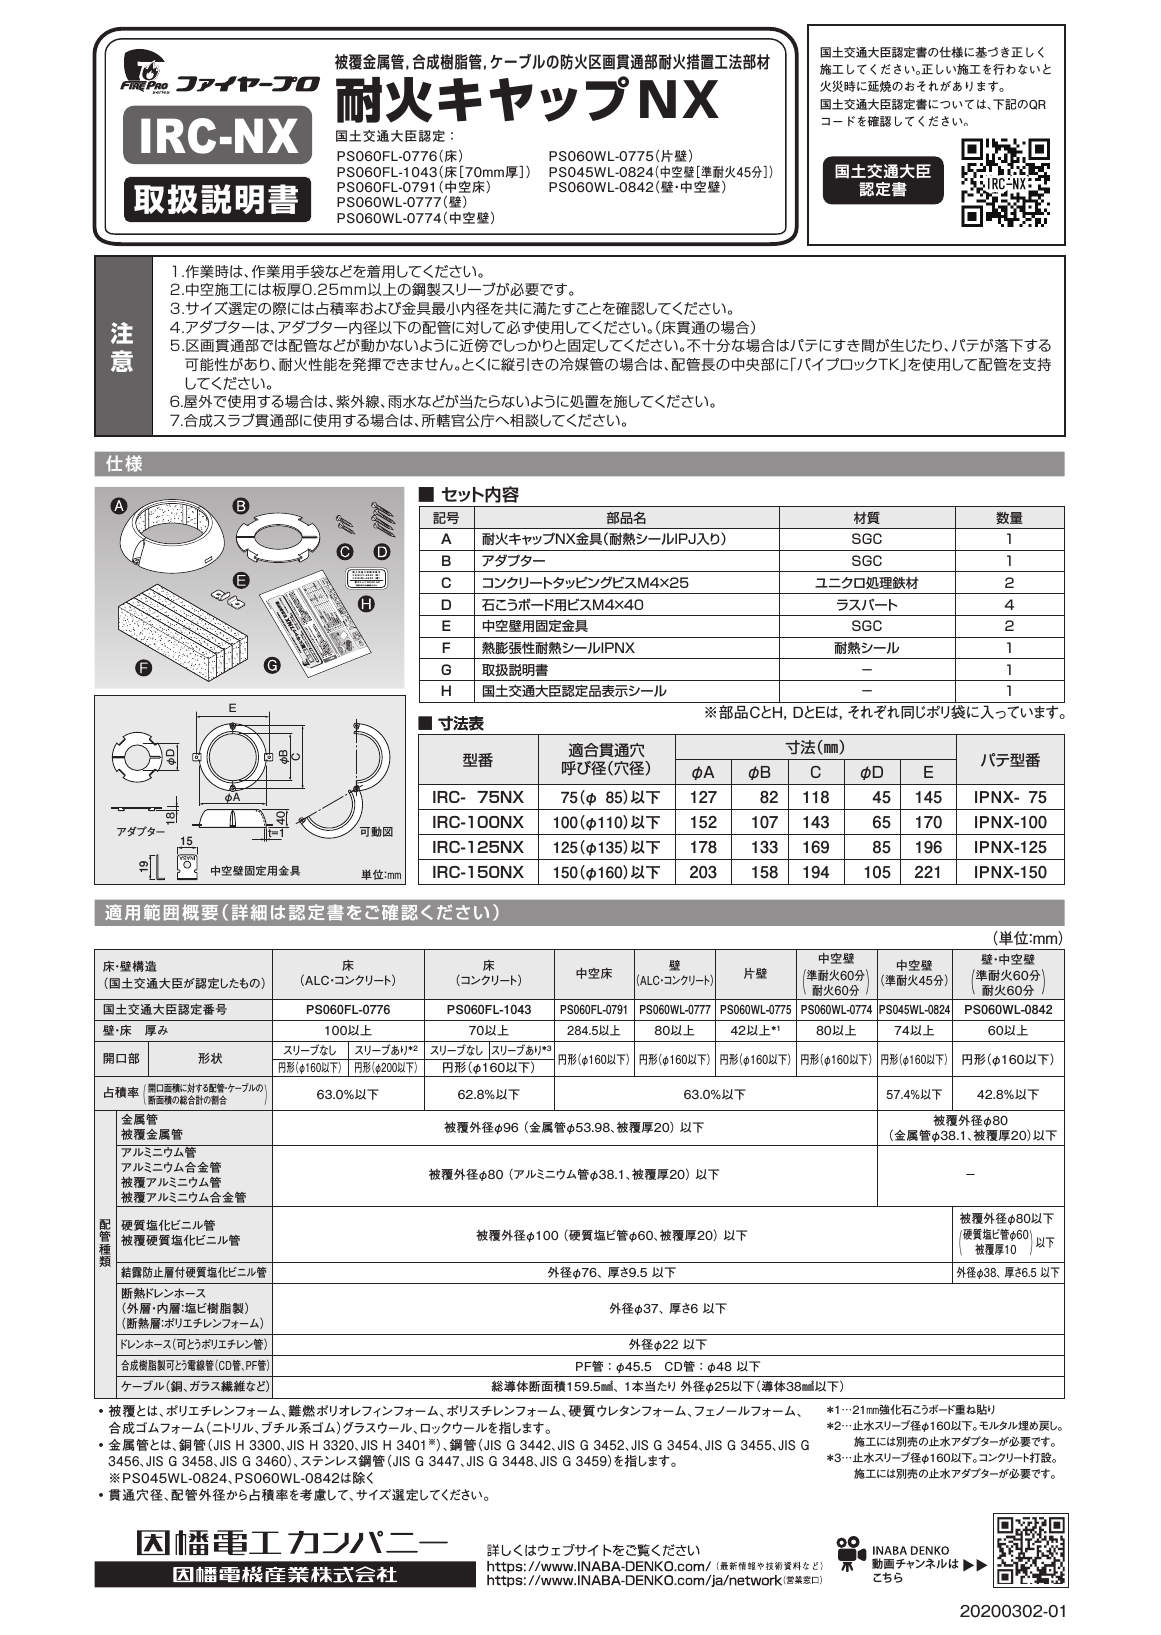 IRC-NX_取扱説明書_20200302-01w.pdf